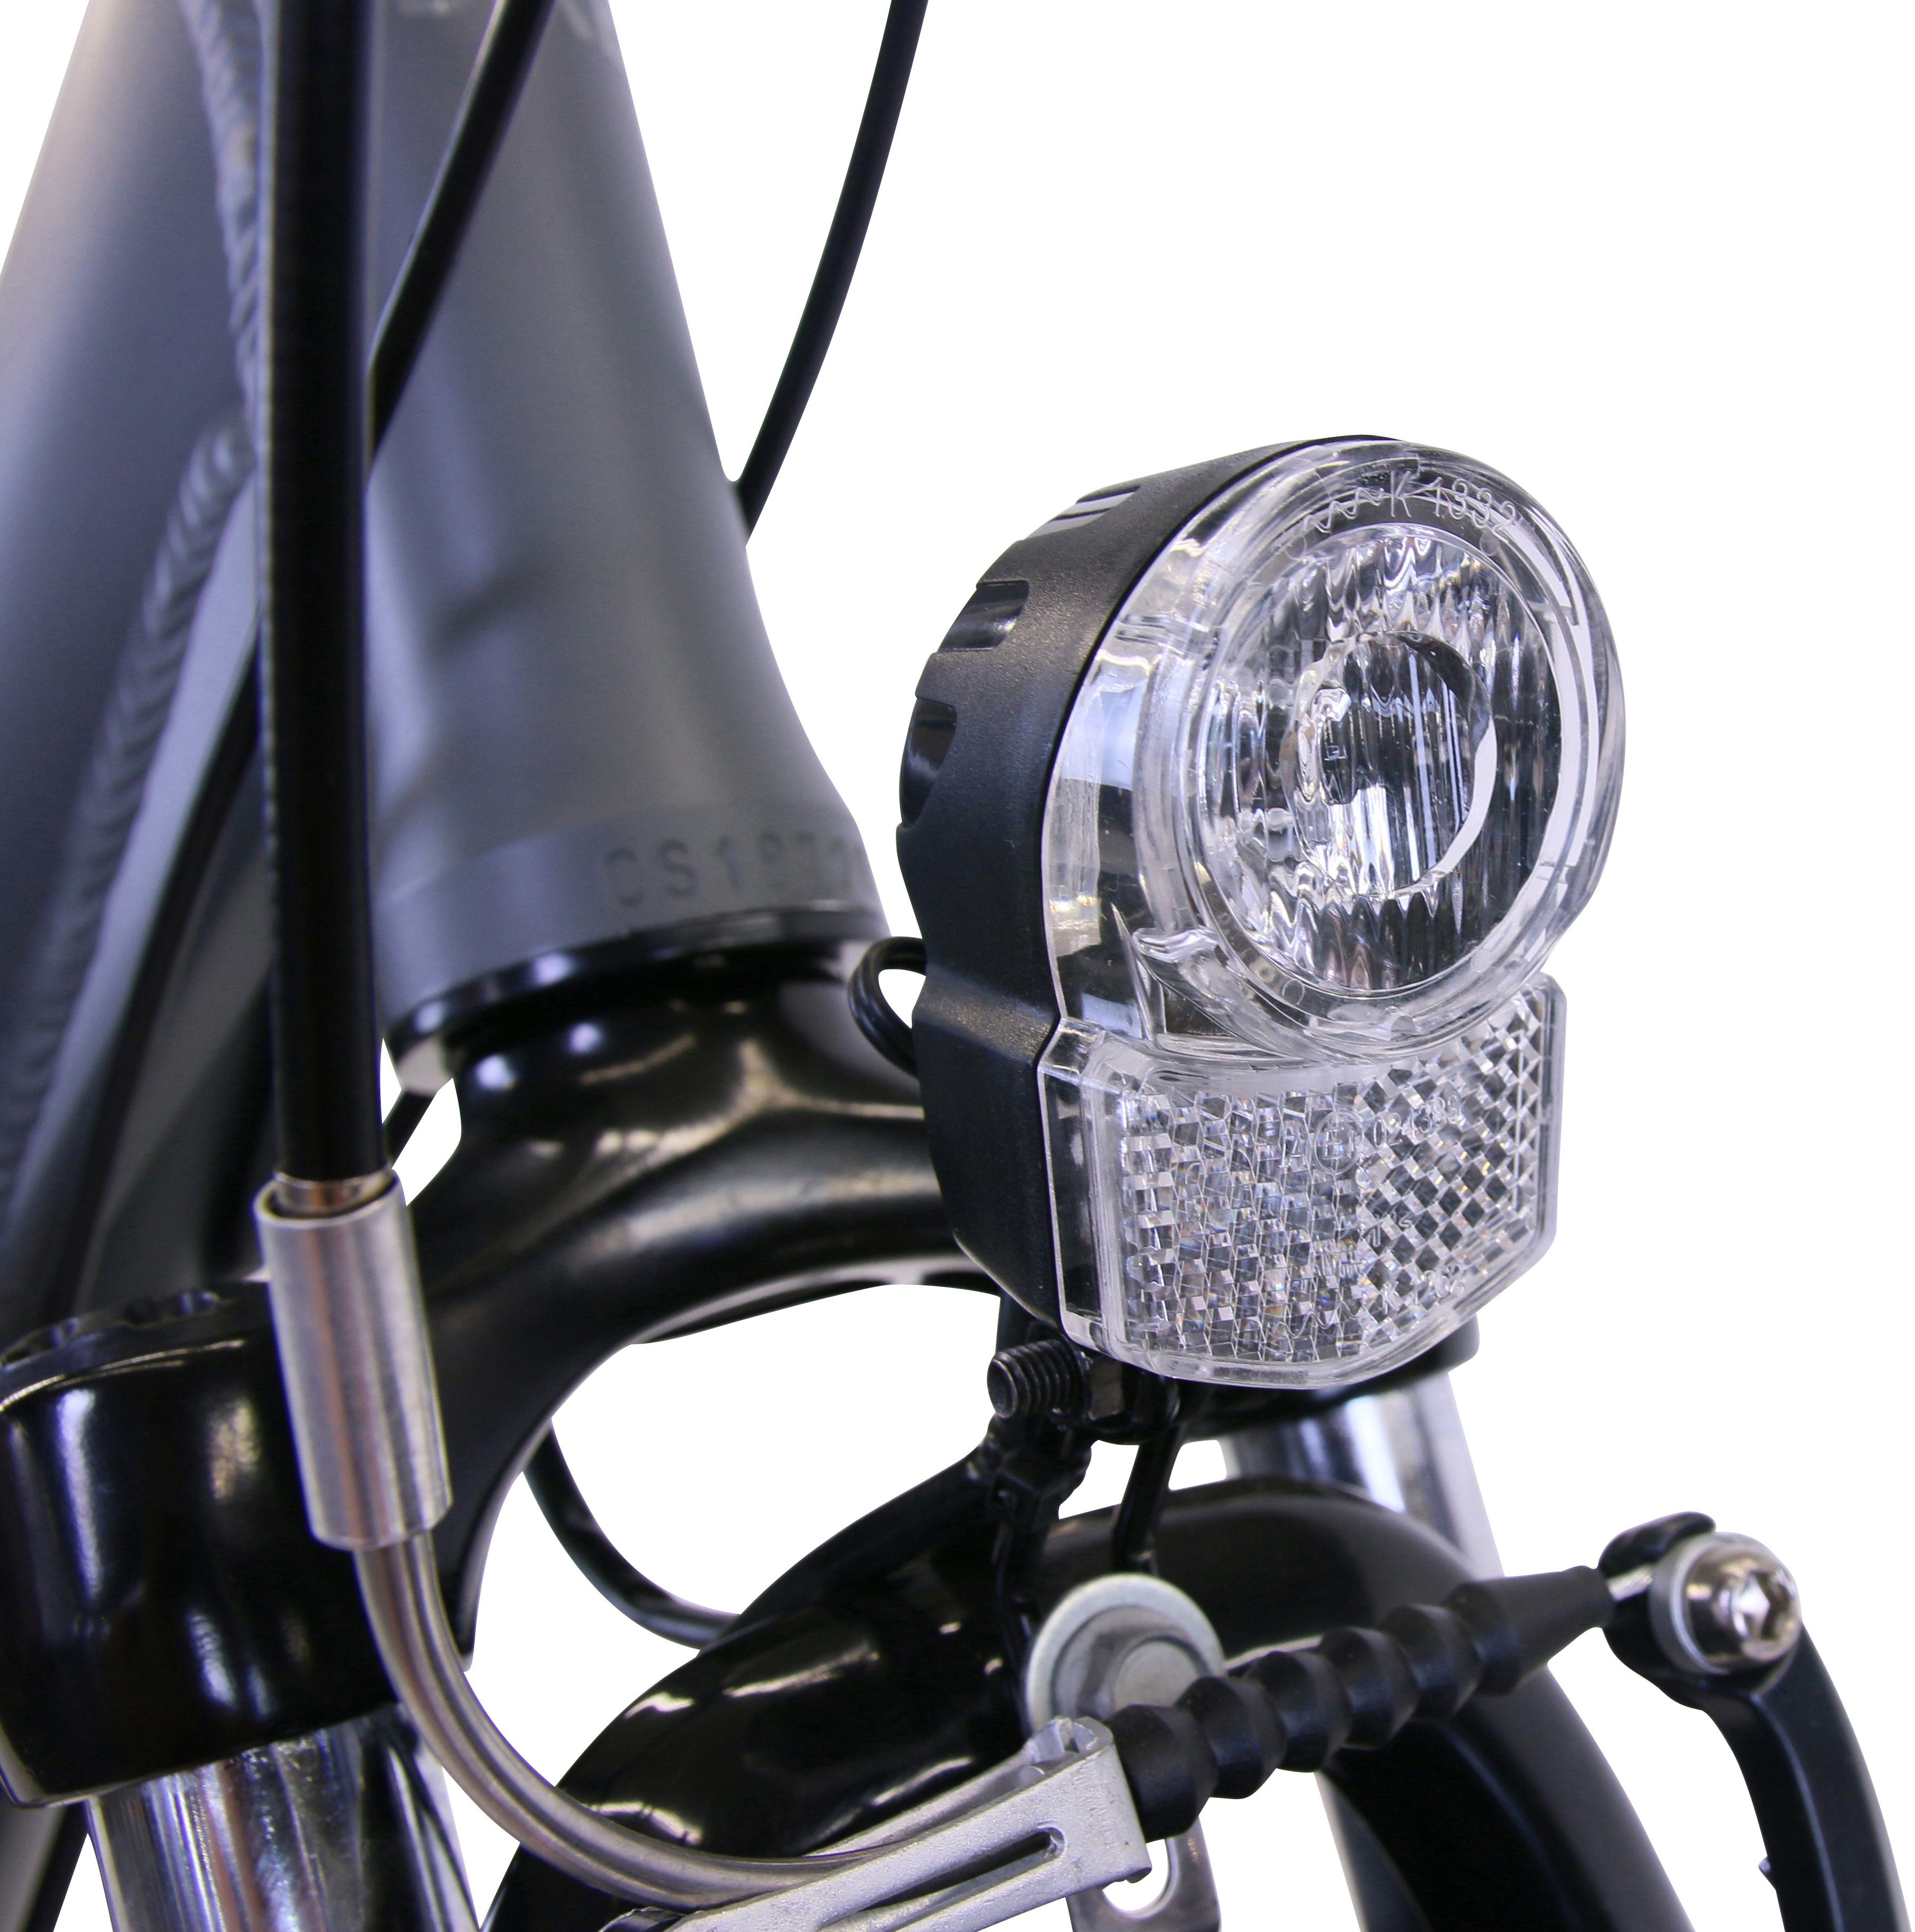 HAWK Schaltwerk Plus Gang 7 City Nexus Bikes HAWK Grey, Deluxe Comfort Cityrad Shimano